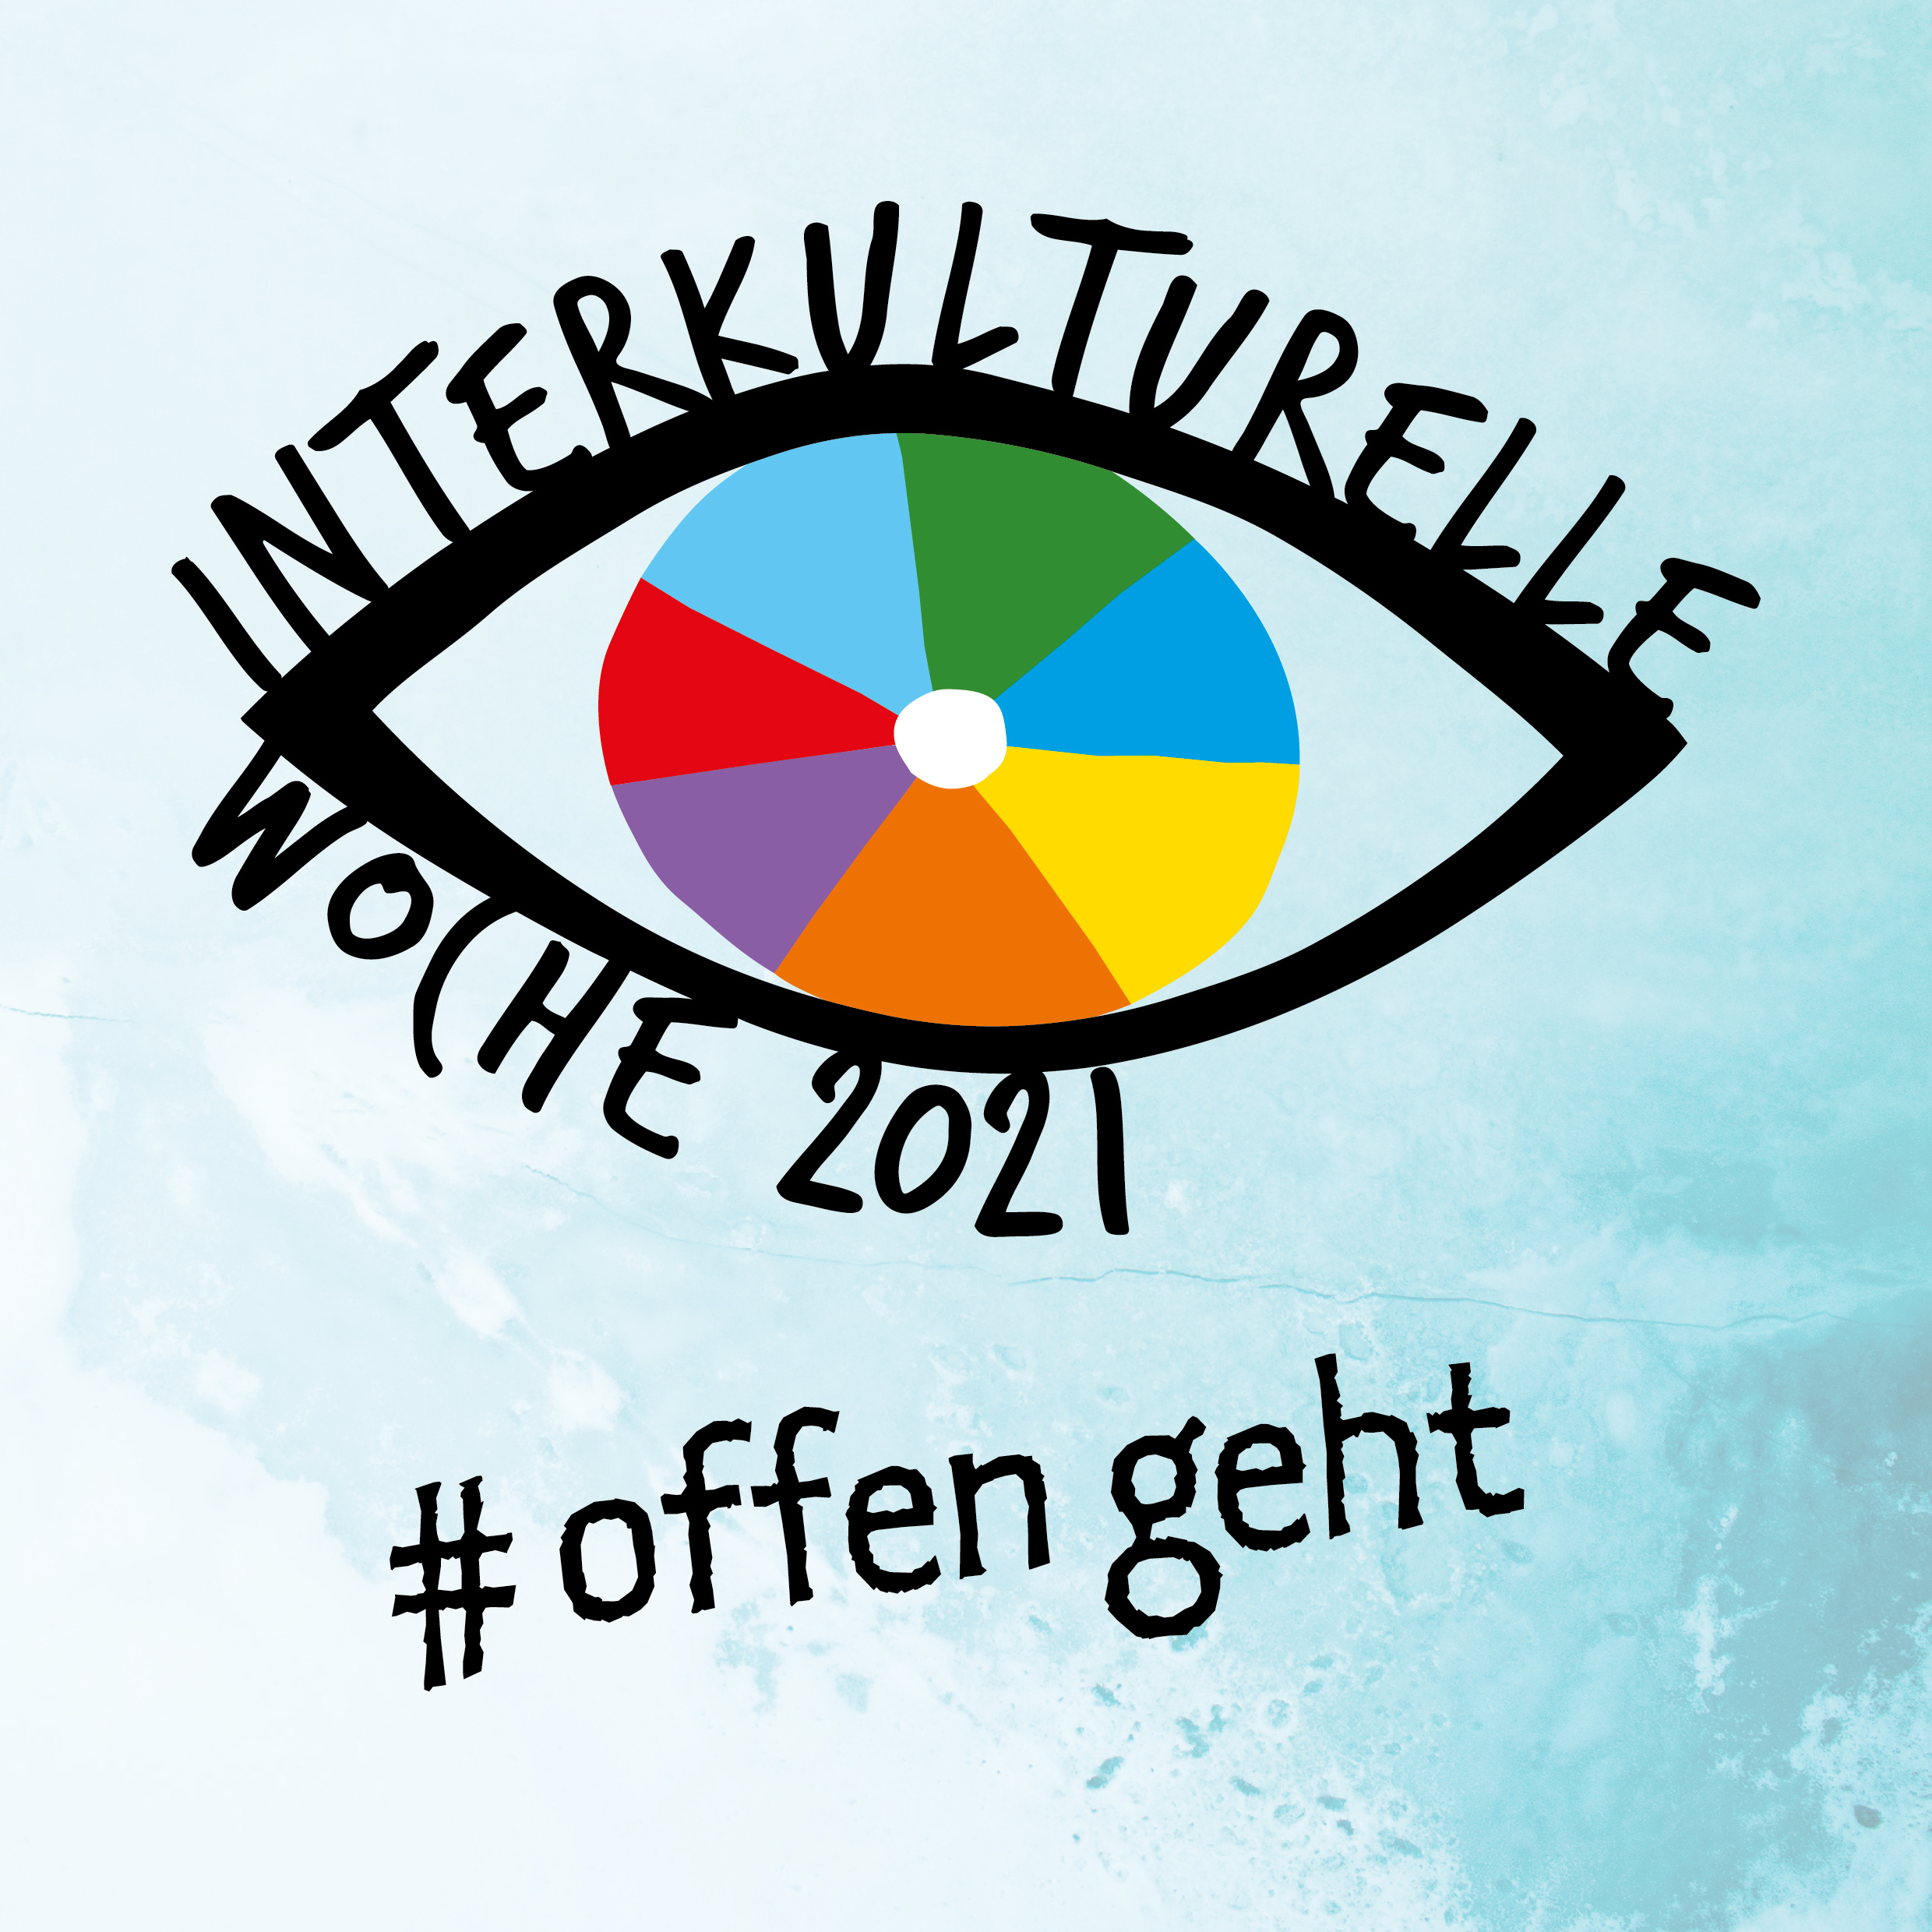 Auf blauem Hintergrund steht das Logo der Interkulturellen Woche 2021 - ein Auge mit einer bunten Iris und den Wörtern "interkulturelle Woche 2021" als Wimpern. Darunter steht der #offengeht.